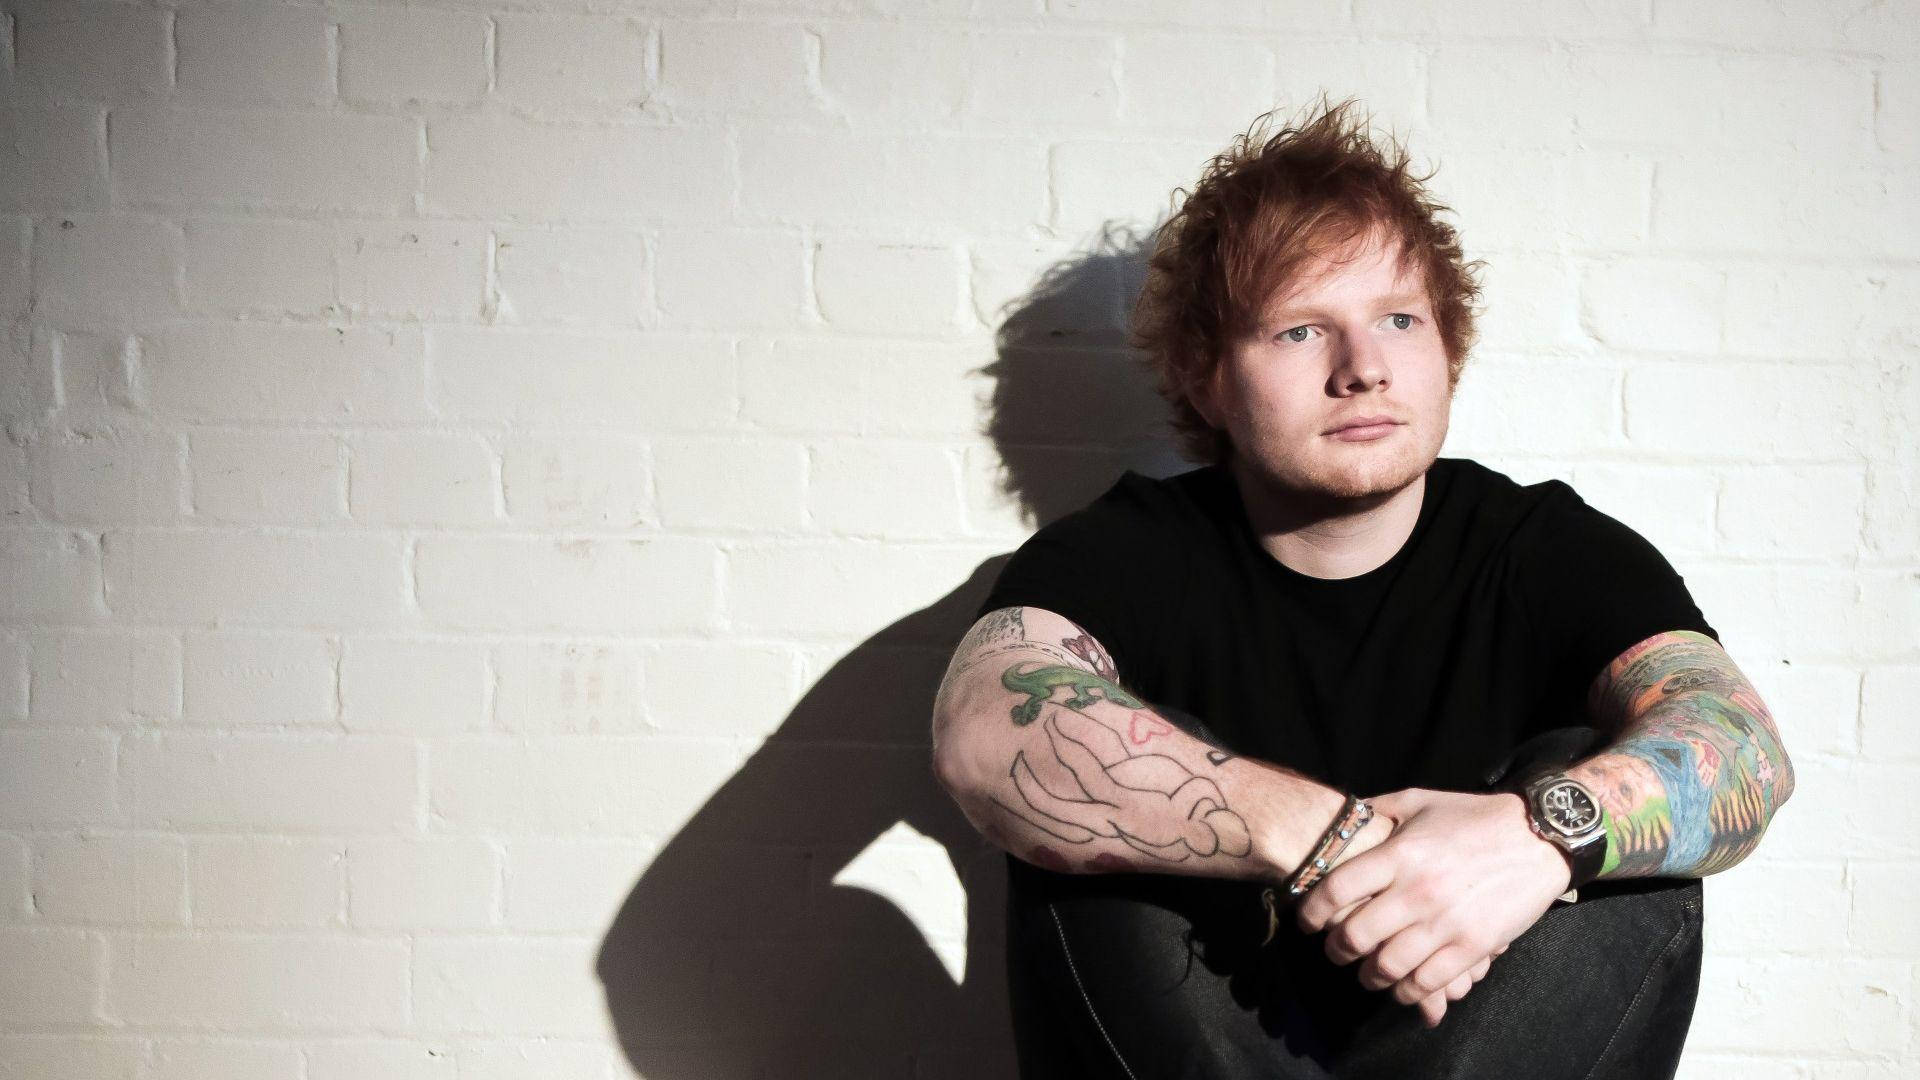 Singer-songwriter Ed Sheeran posing in a charming fashion Wallpaper